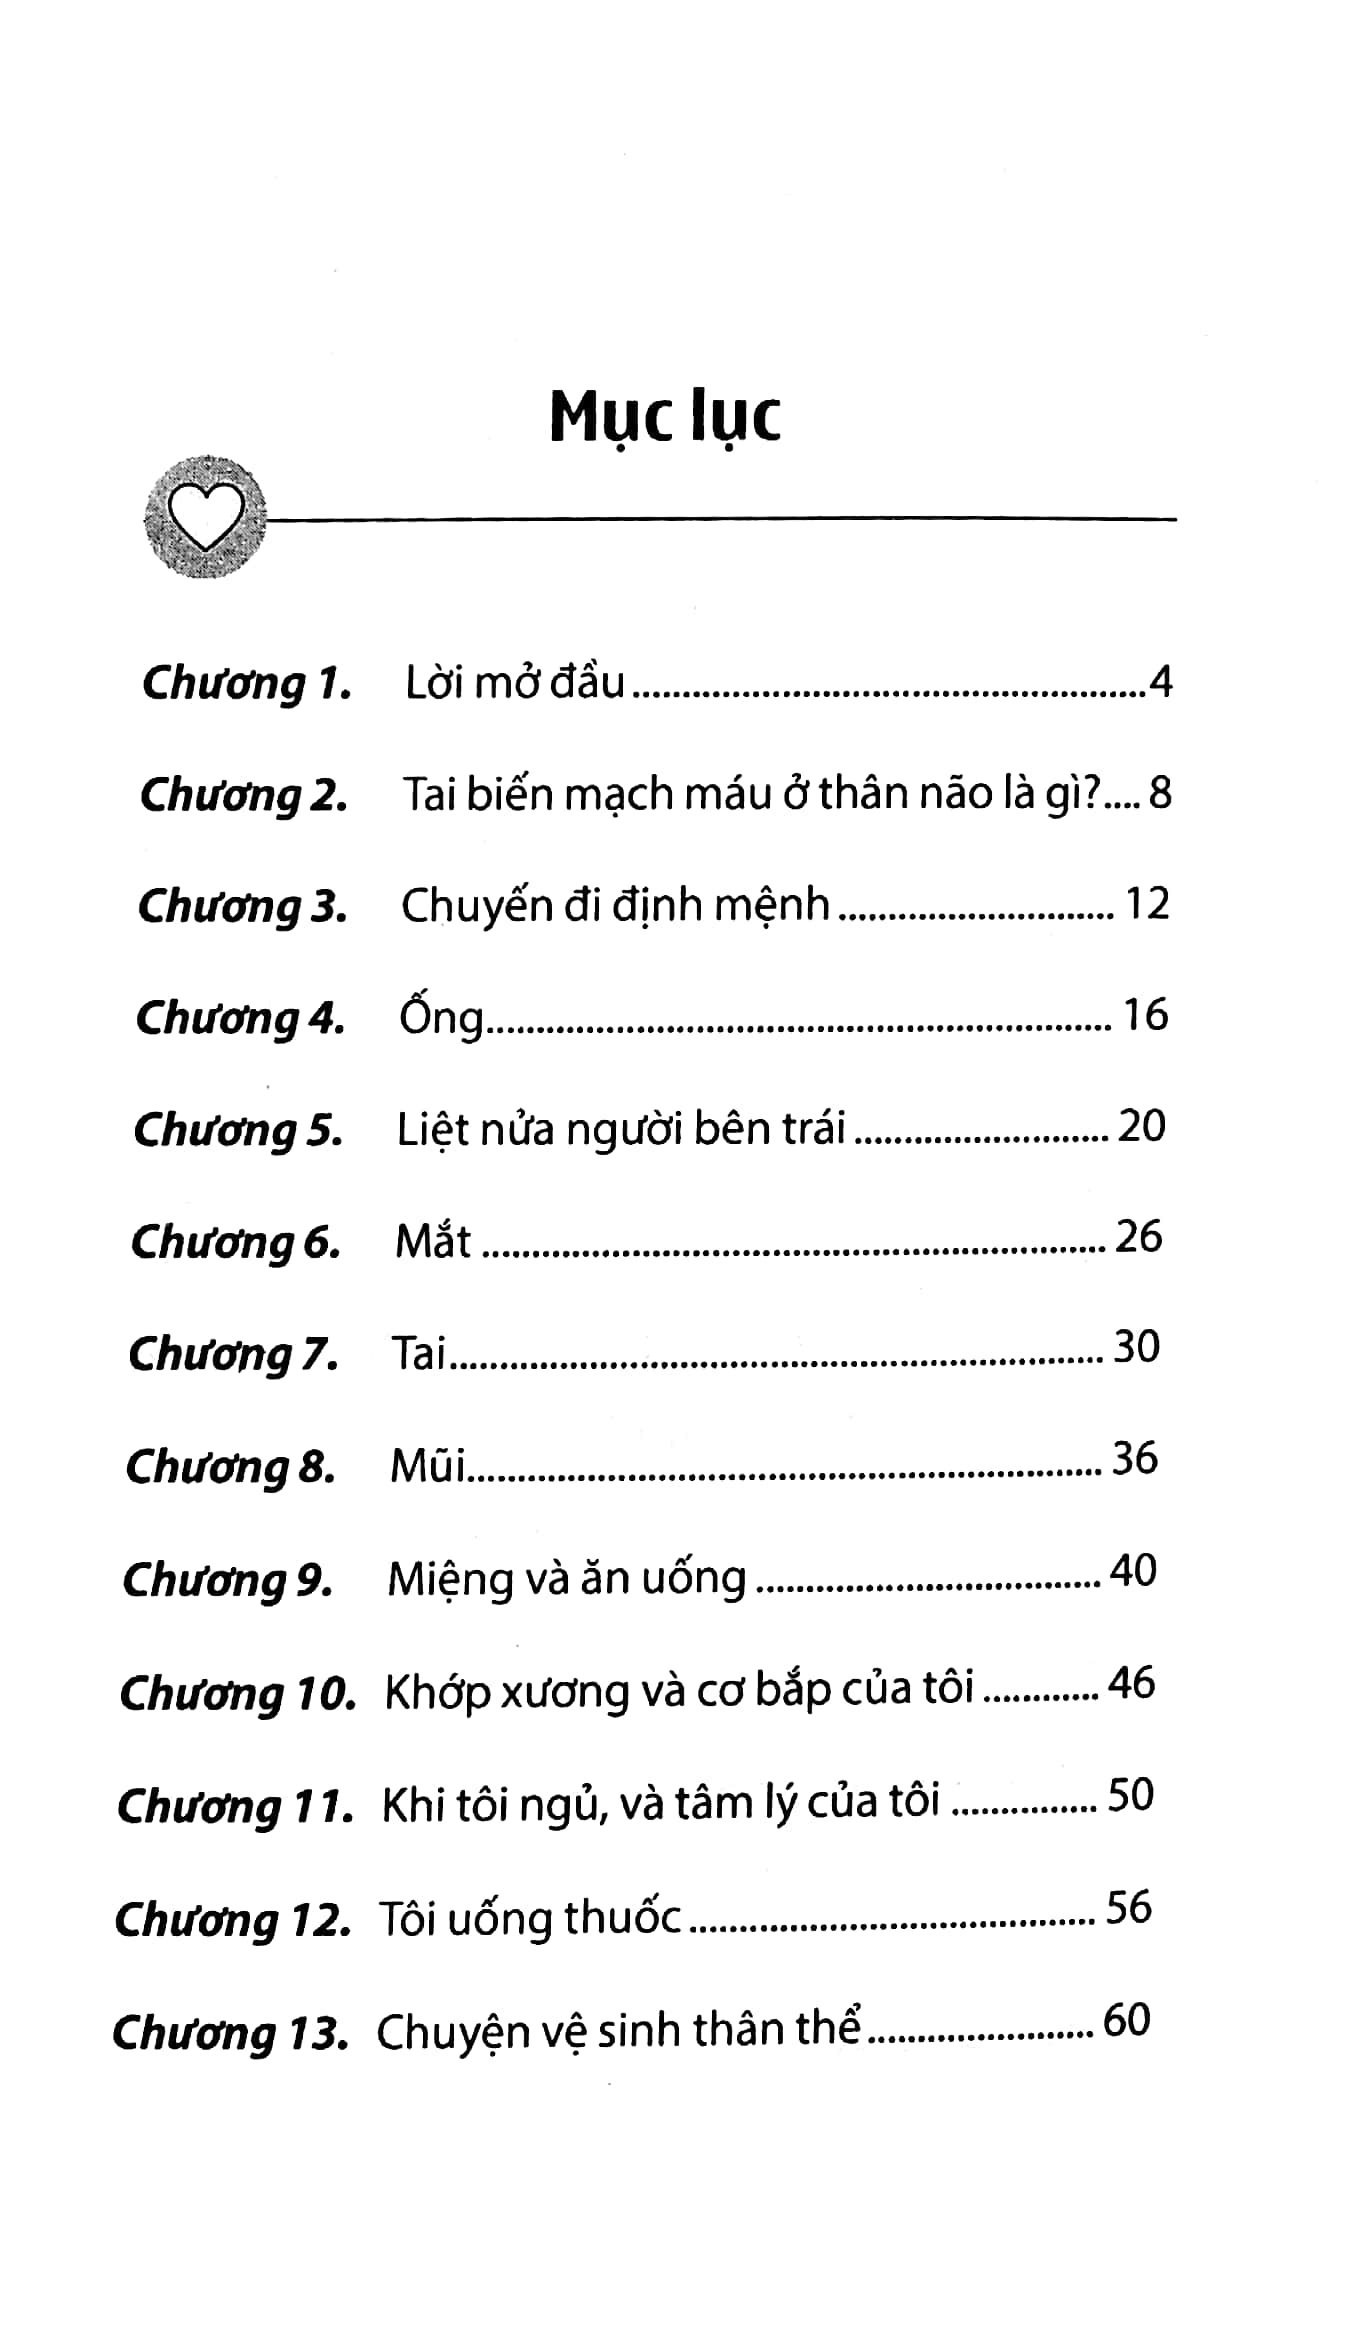 Hành Trình Vượt Qua Cái Chết Của Người Bị Tai Biến Mạch Máu Ở Thân Não Song Ngữ Anh - Việt PDF